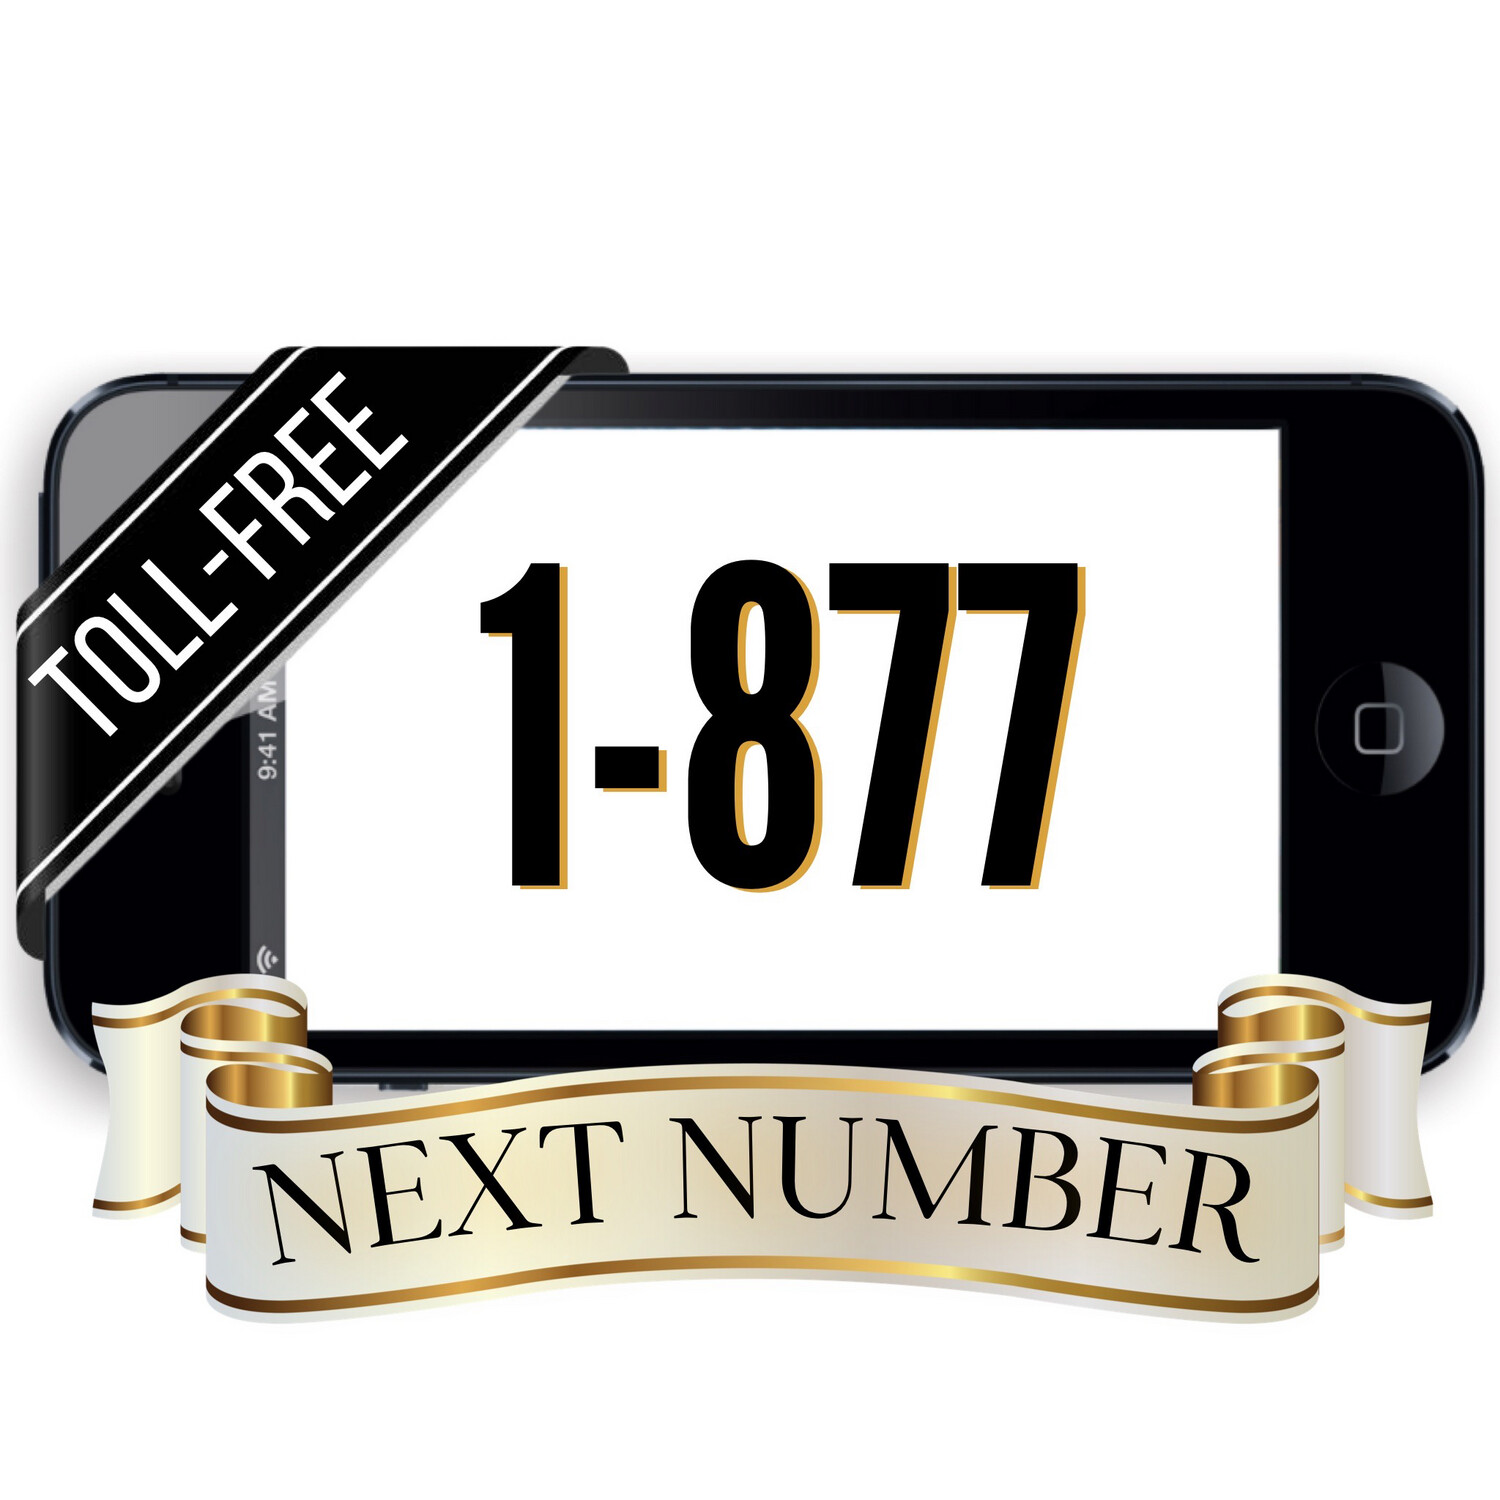 Next 1-877 Number